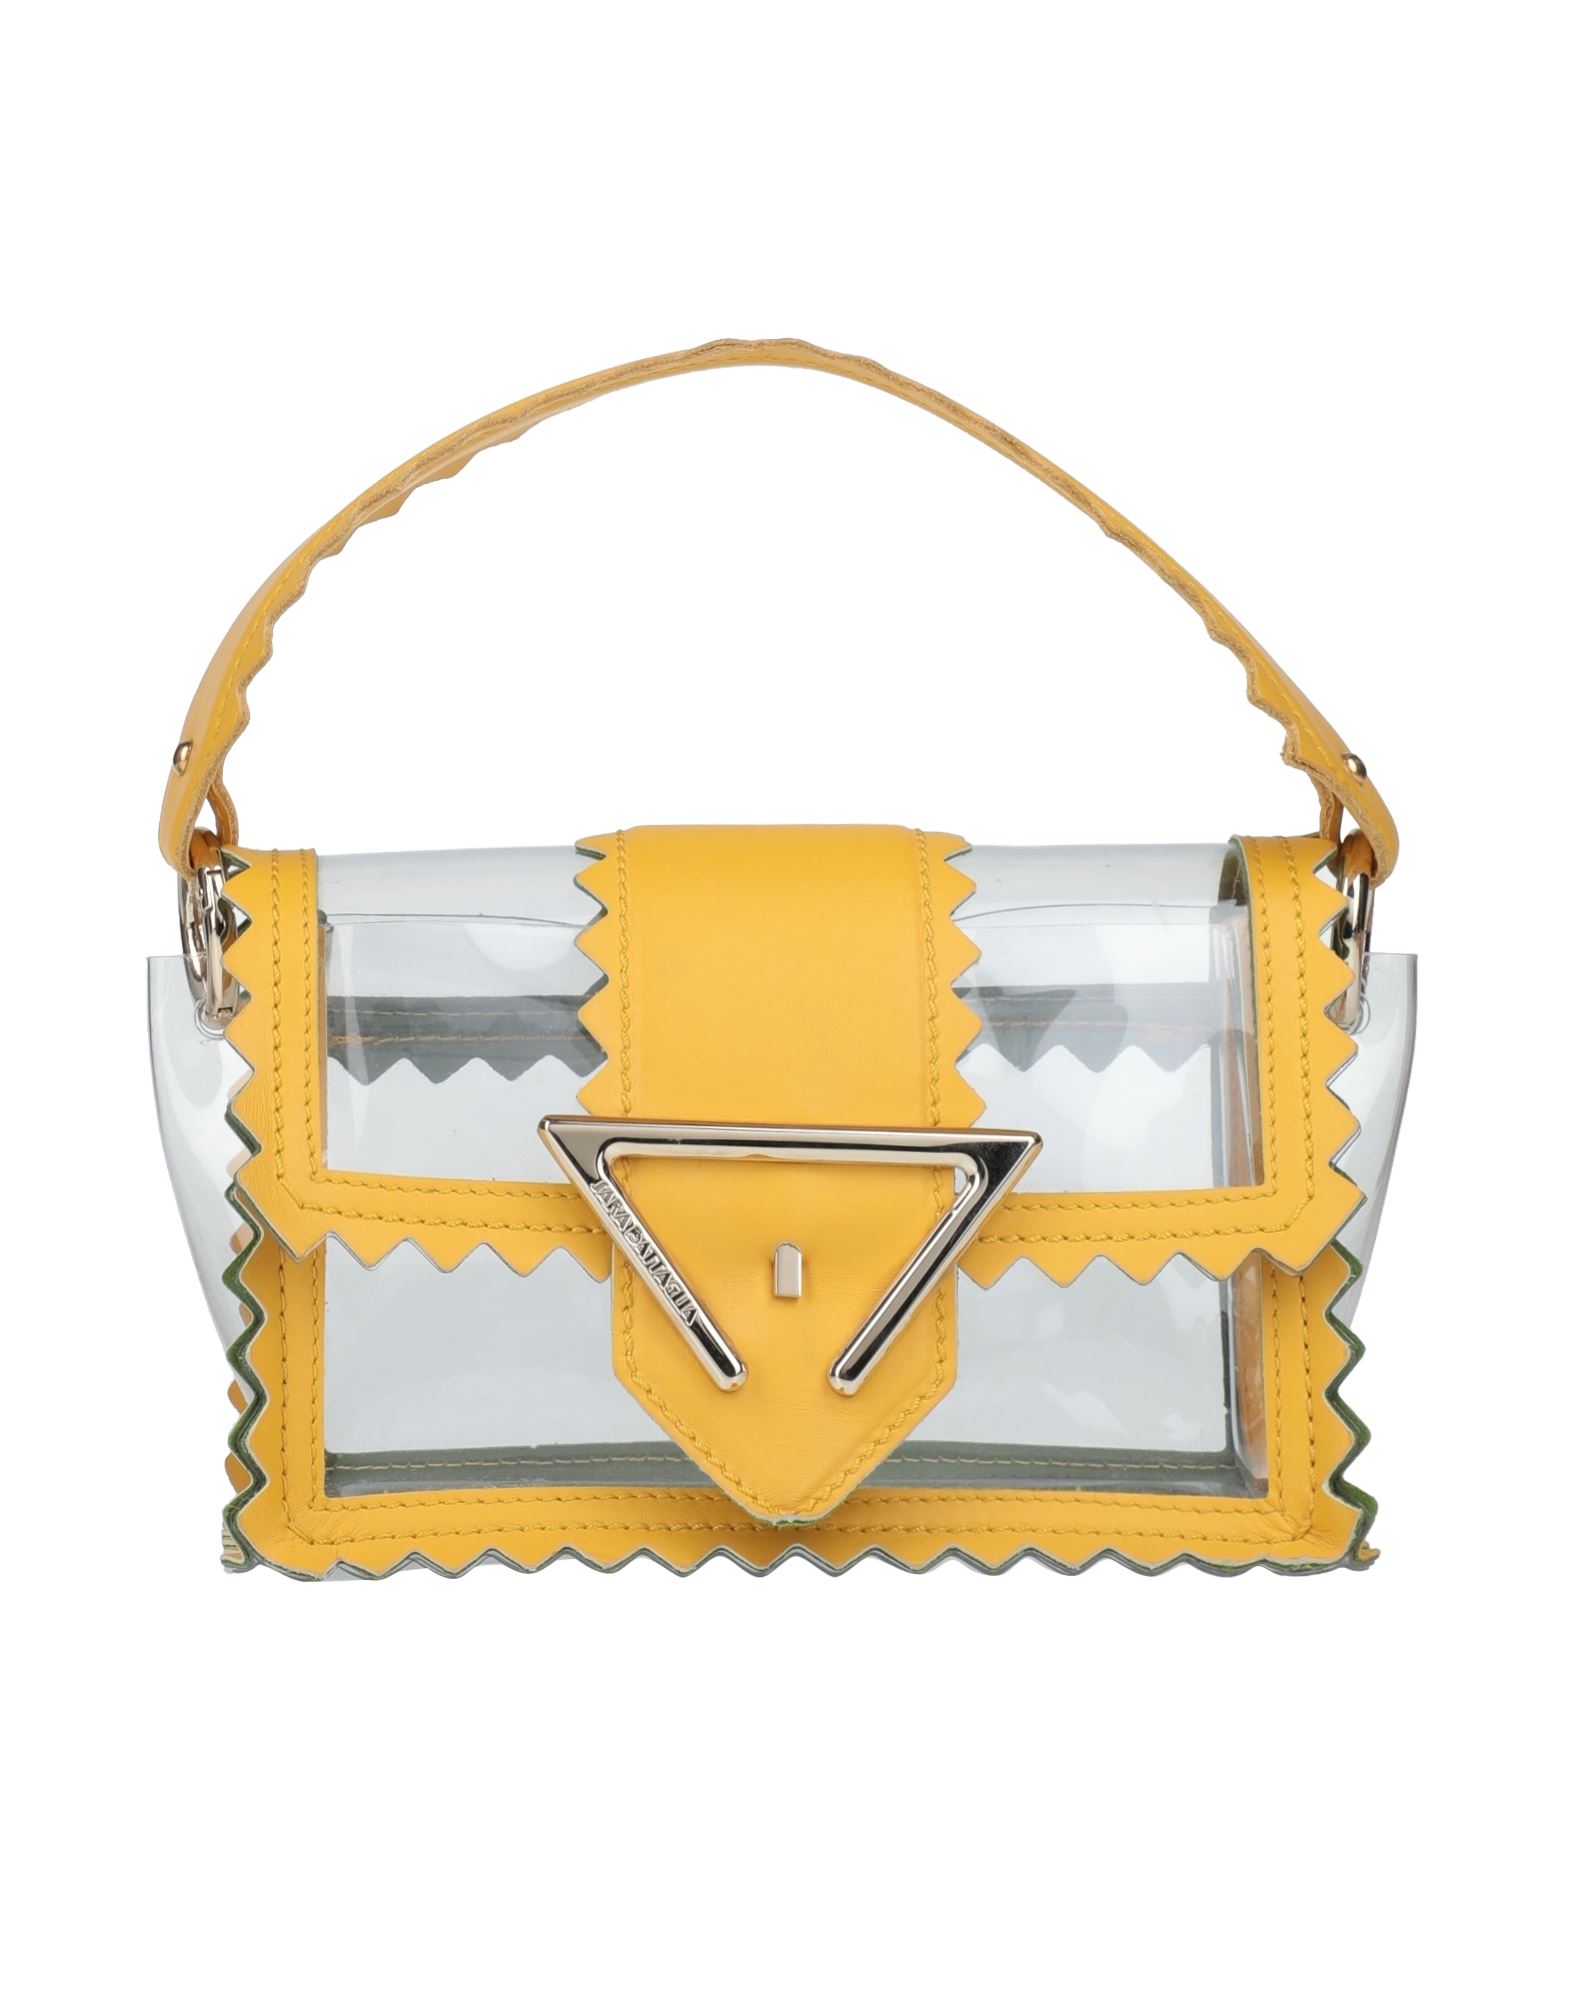 SARA BATTAGLIA Bags for Women | ModeSens